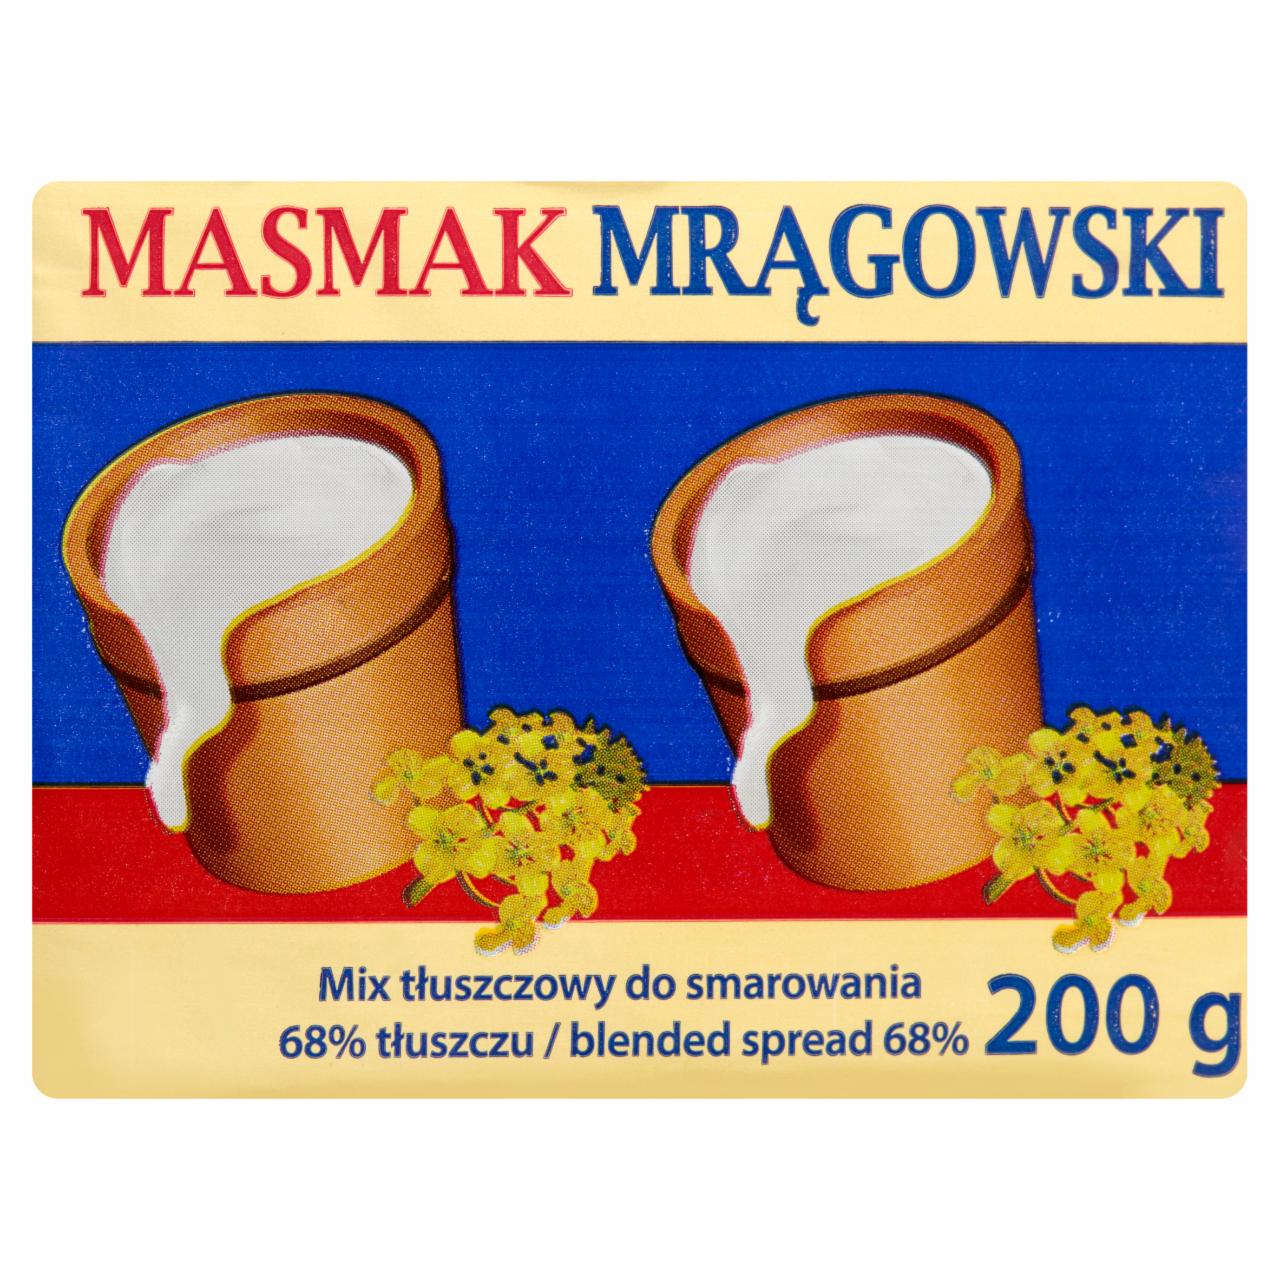 Zdjęcia - Masmak Mrągowski Mix tłuszczowy do smarowania 200 g